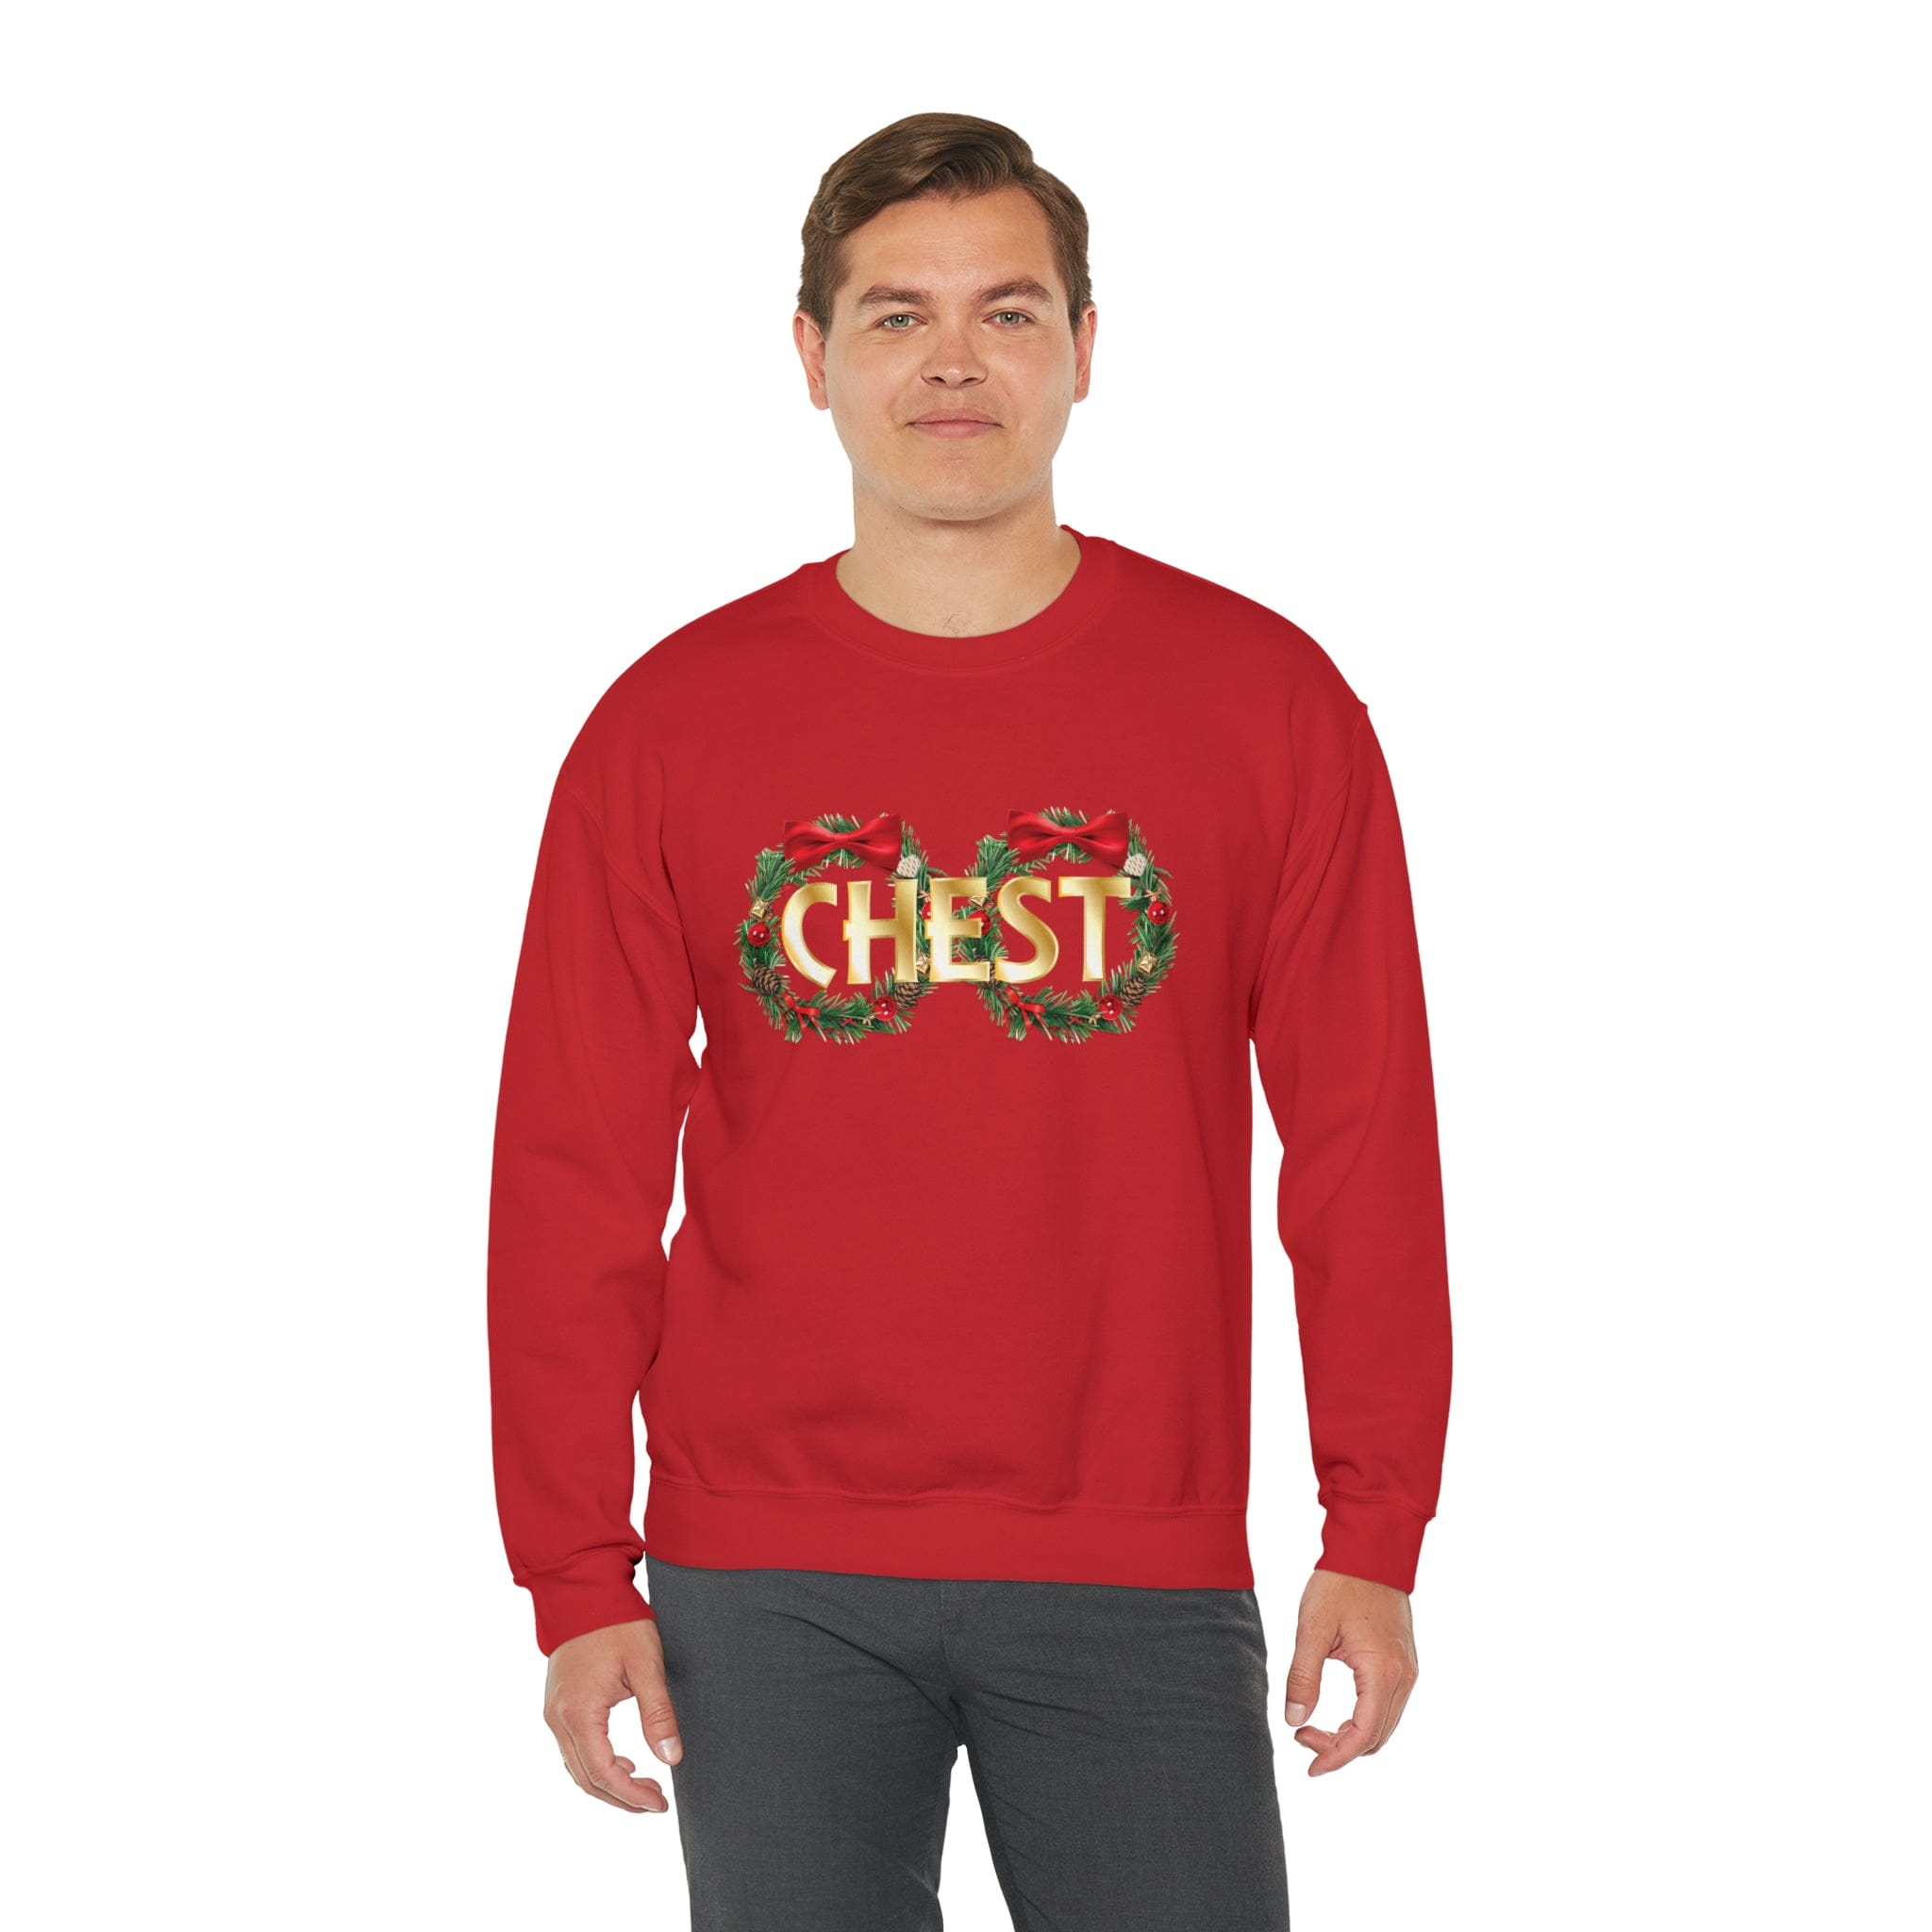 Chest v2 Sweatshirt